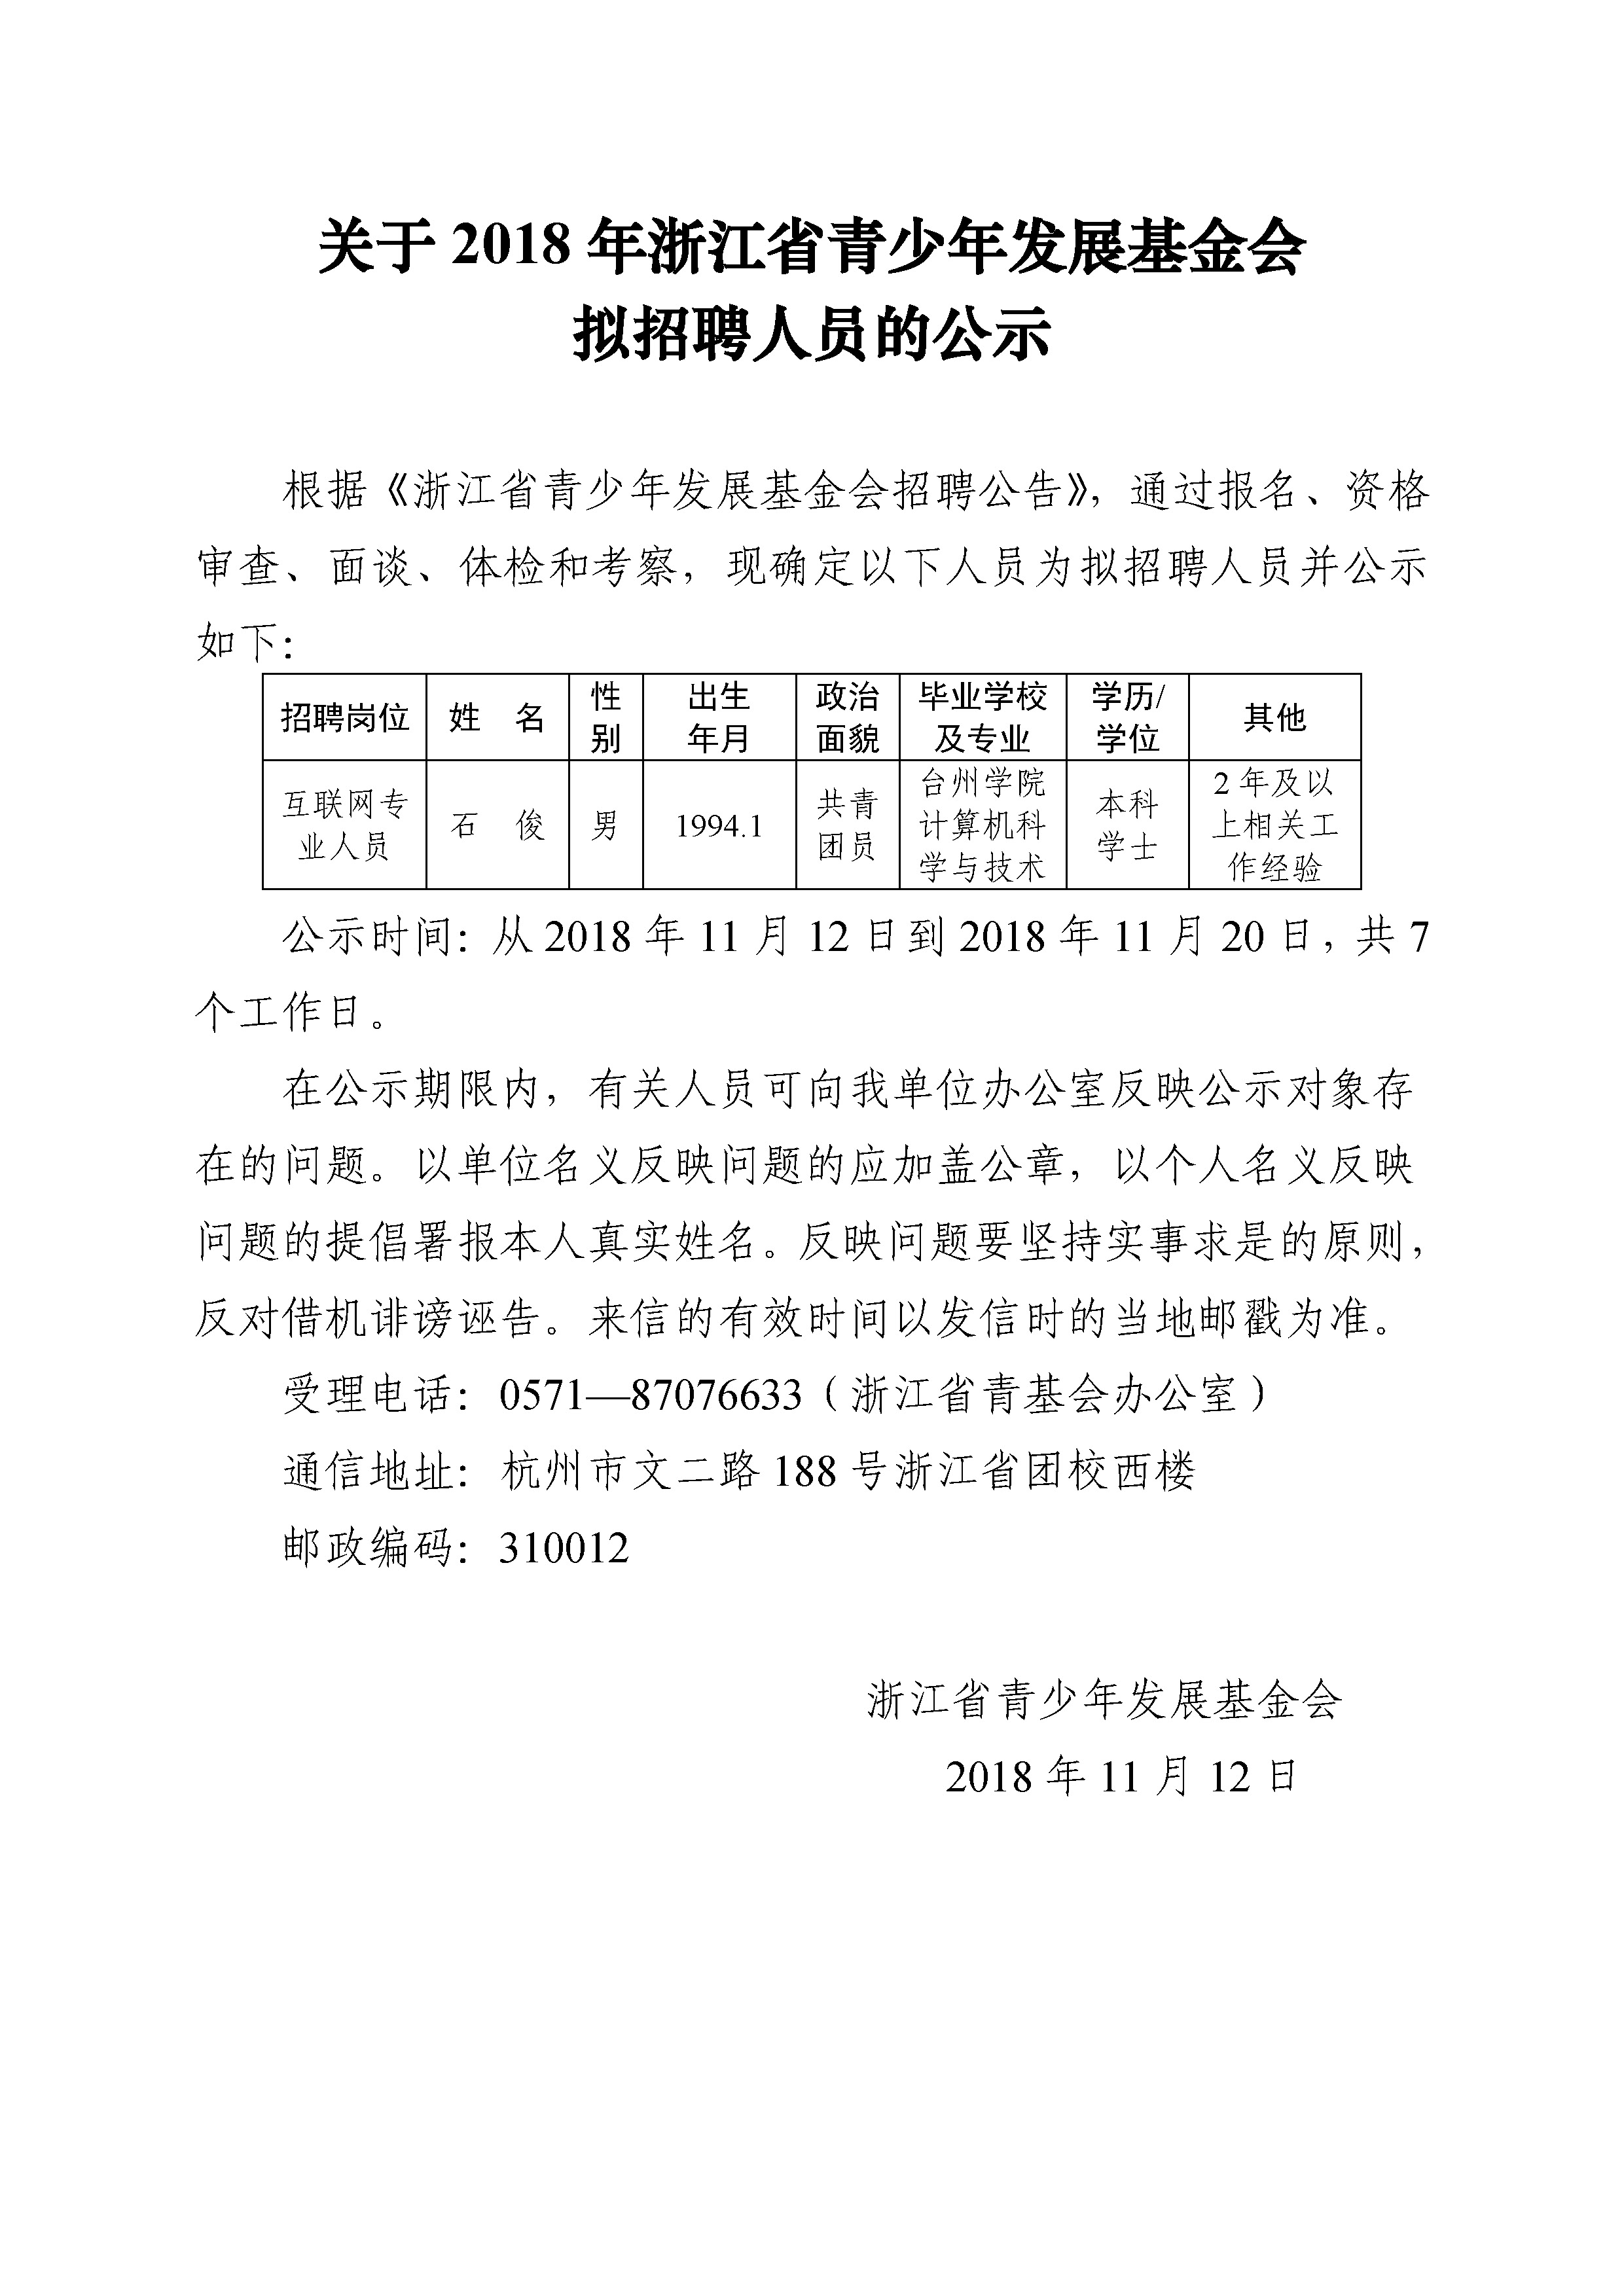 20181112关于省青基会拟聘人员的公示.jpg